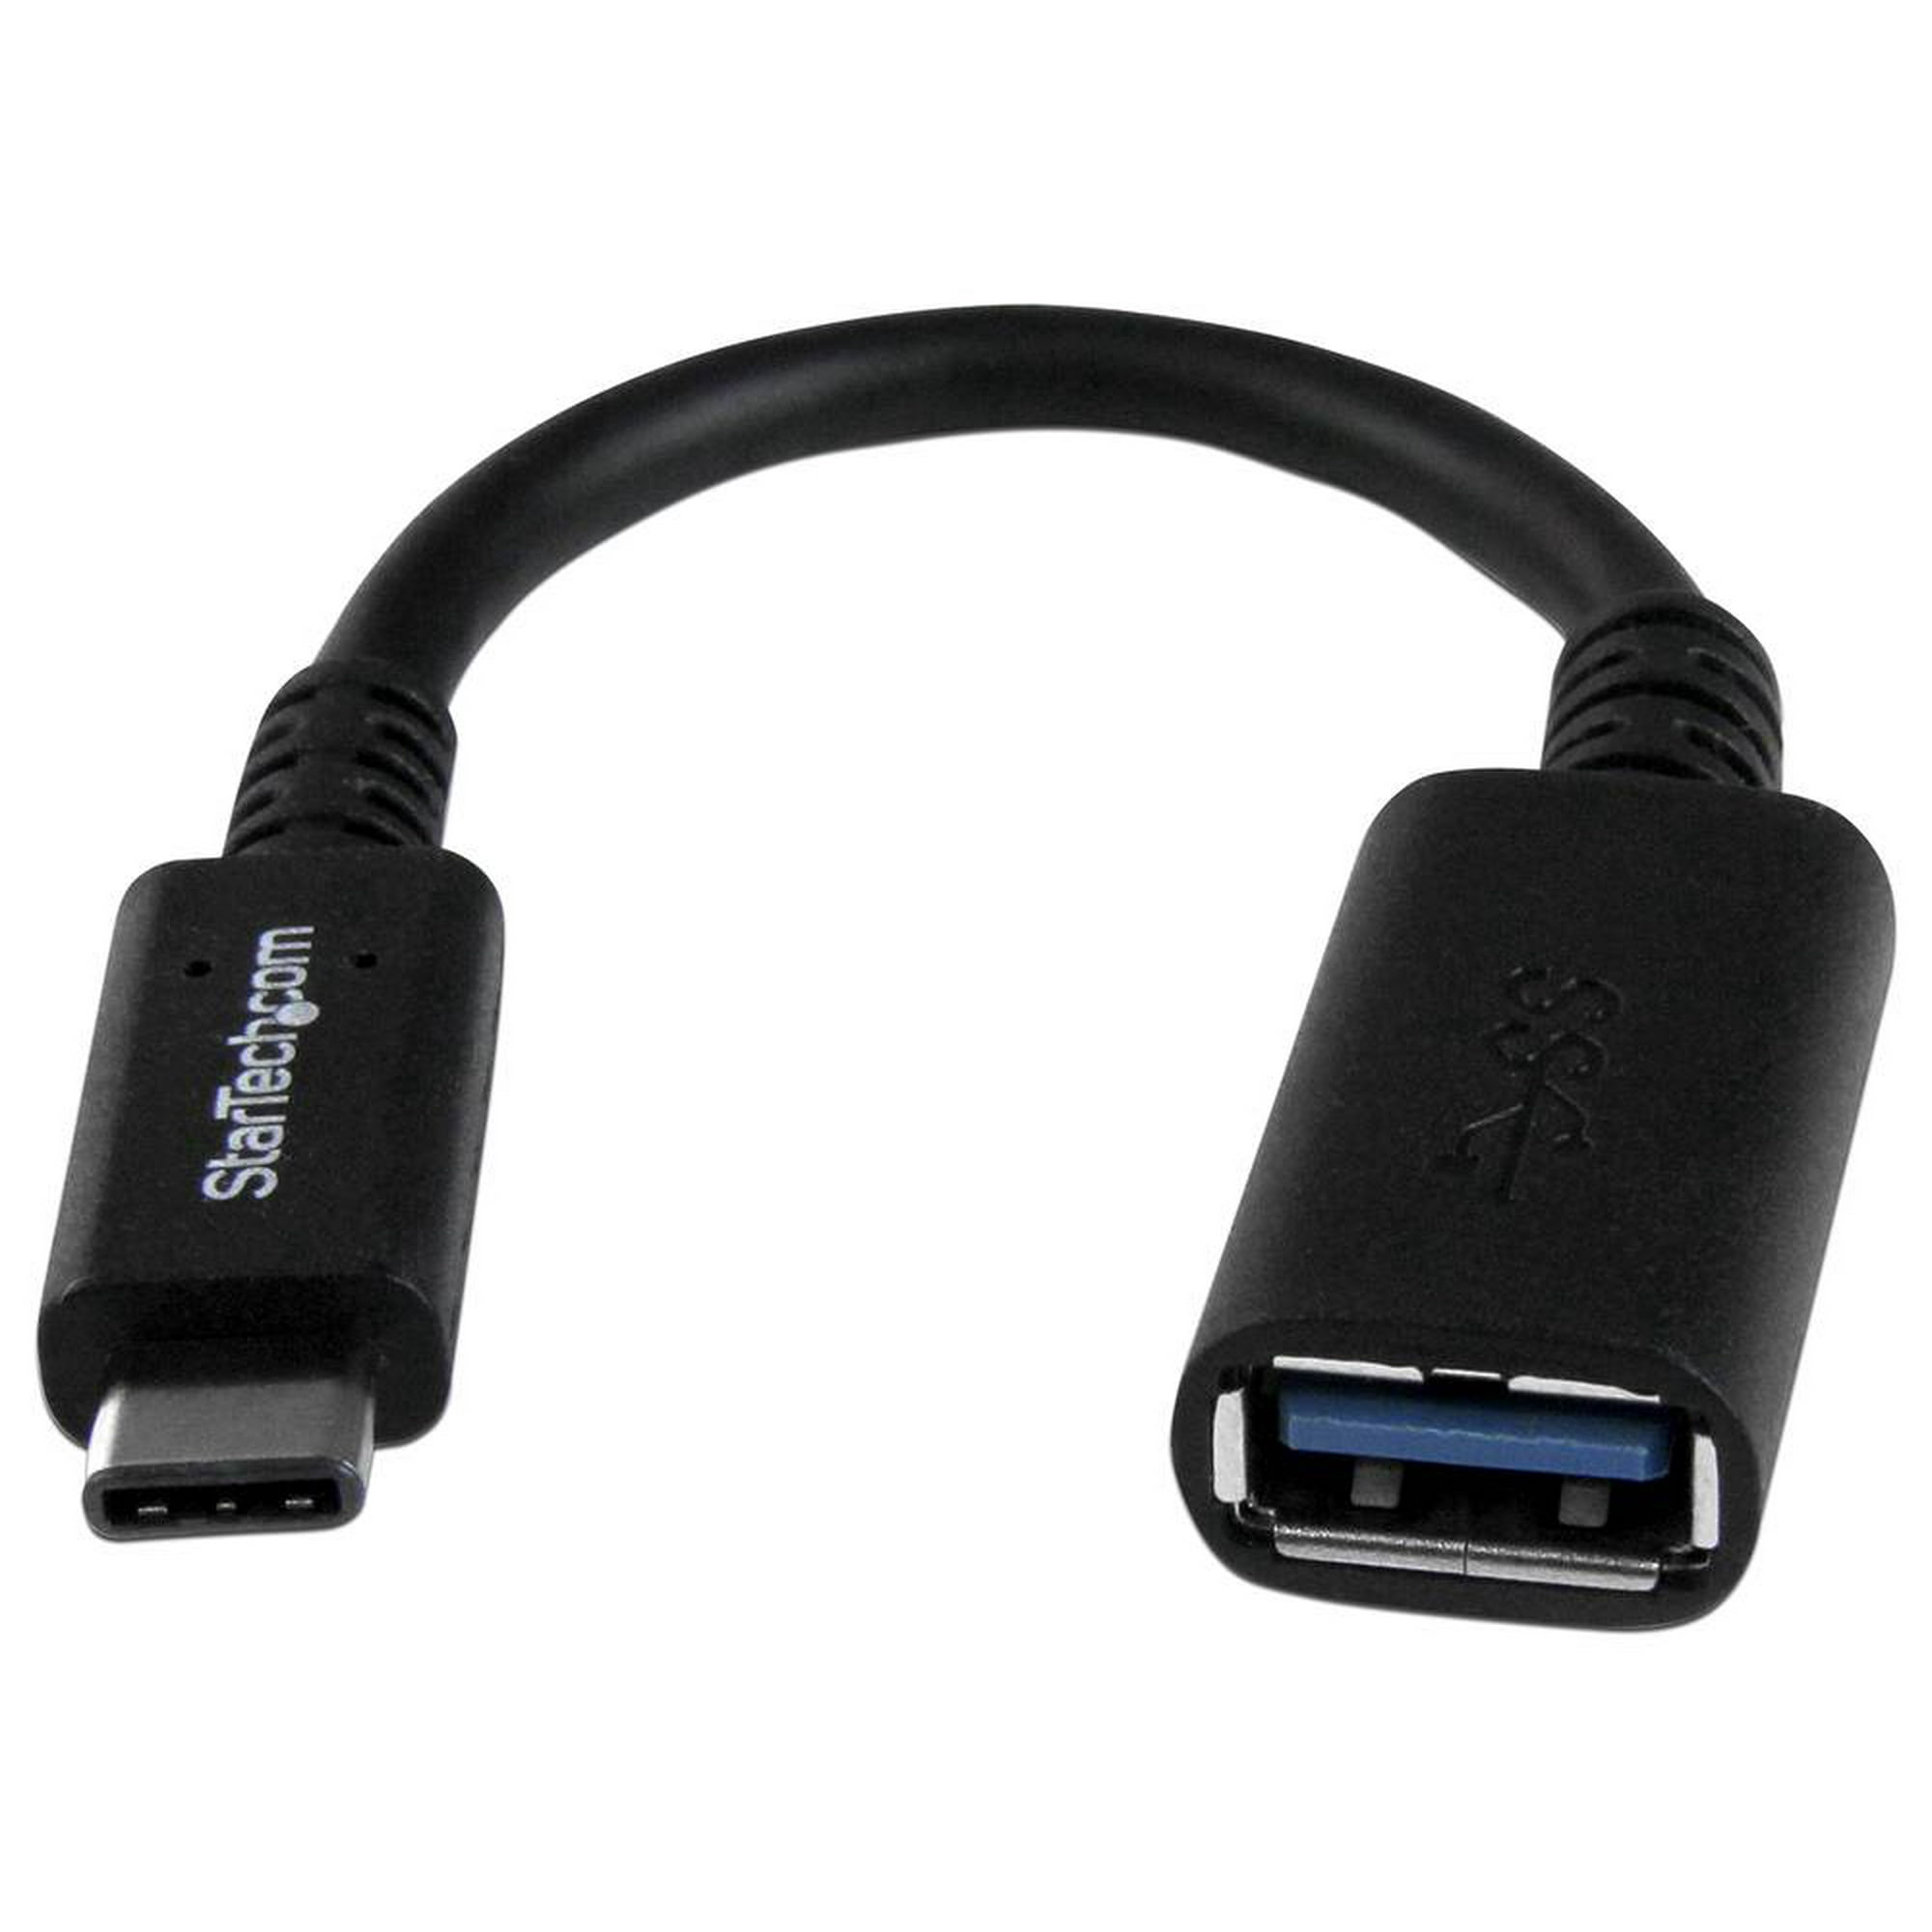 Adaptador USB Tipo C a USB 3.0 2Pcs Convertidor de Alta Velocidad para PC  Laptop